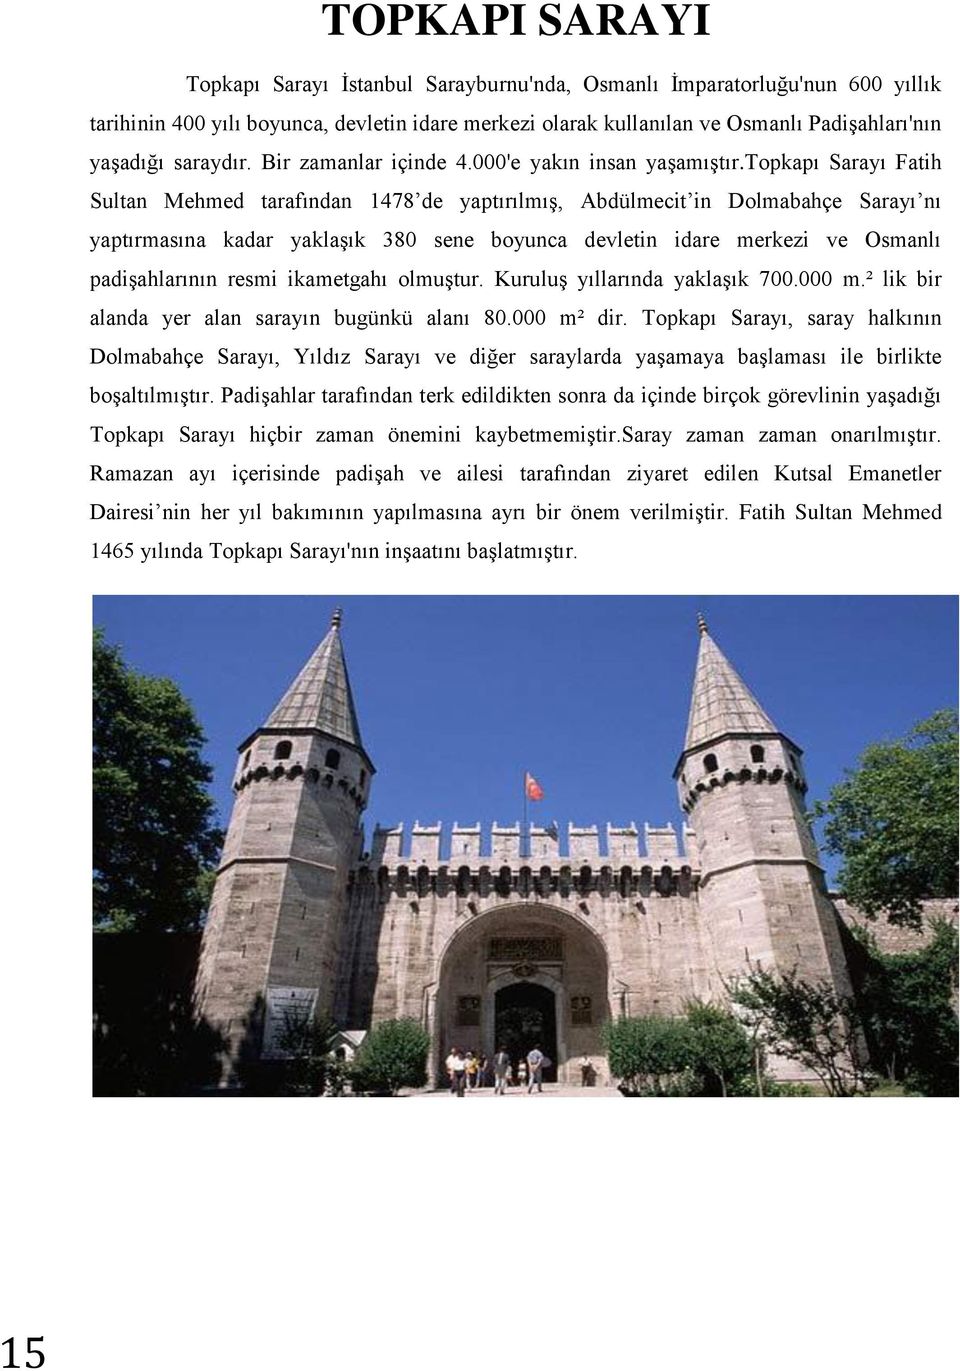 topkapı Sarayı Fatih Sultan Mehmed tarafından 1478 de yaptırılmış, Abdülmecit in Dolmabahçe Sarayı nı yaptırmasına kadar yaklaşık 380 sene boyunca devletin idare merkezi ve Osmanlı padişahlarının